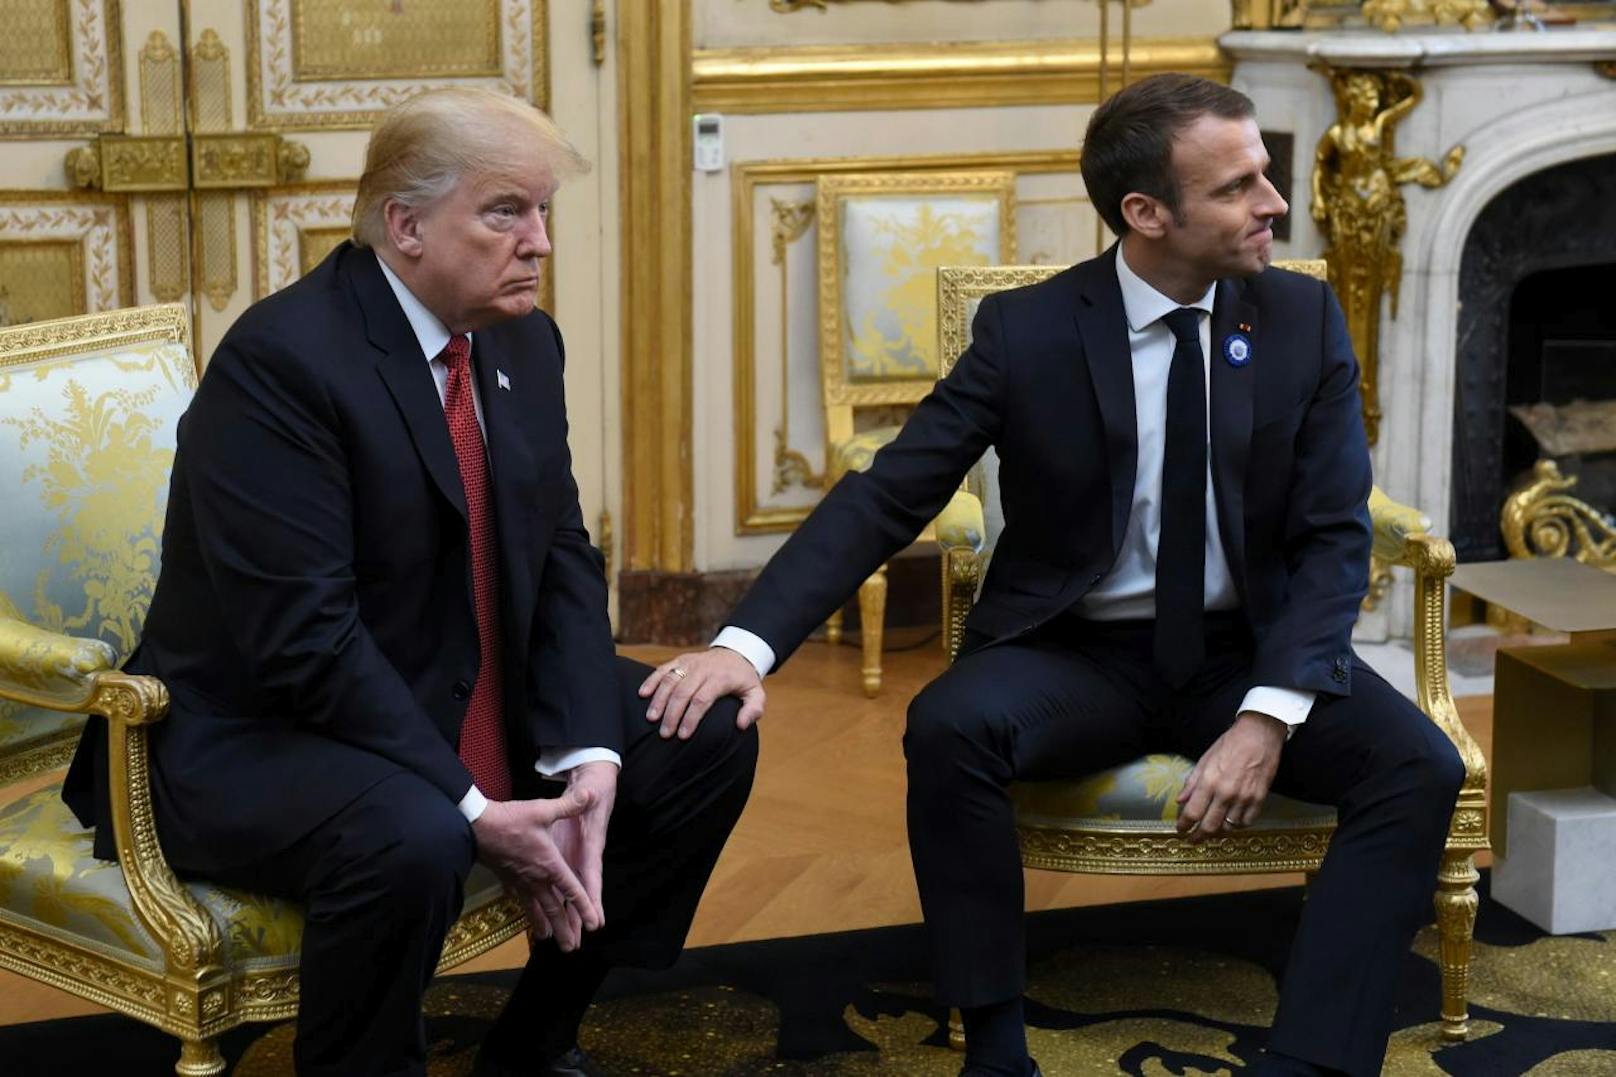 Seinen "Sieg" zeigte Macron mit einer weiteren Dominanzgeste: Er legte seine Hand auf Trumps Knie, so als woltle er sagen: "Er gehört jetzt mir." Trump wird geschlagen.